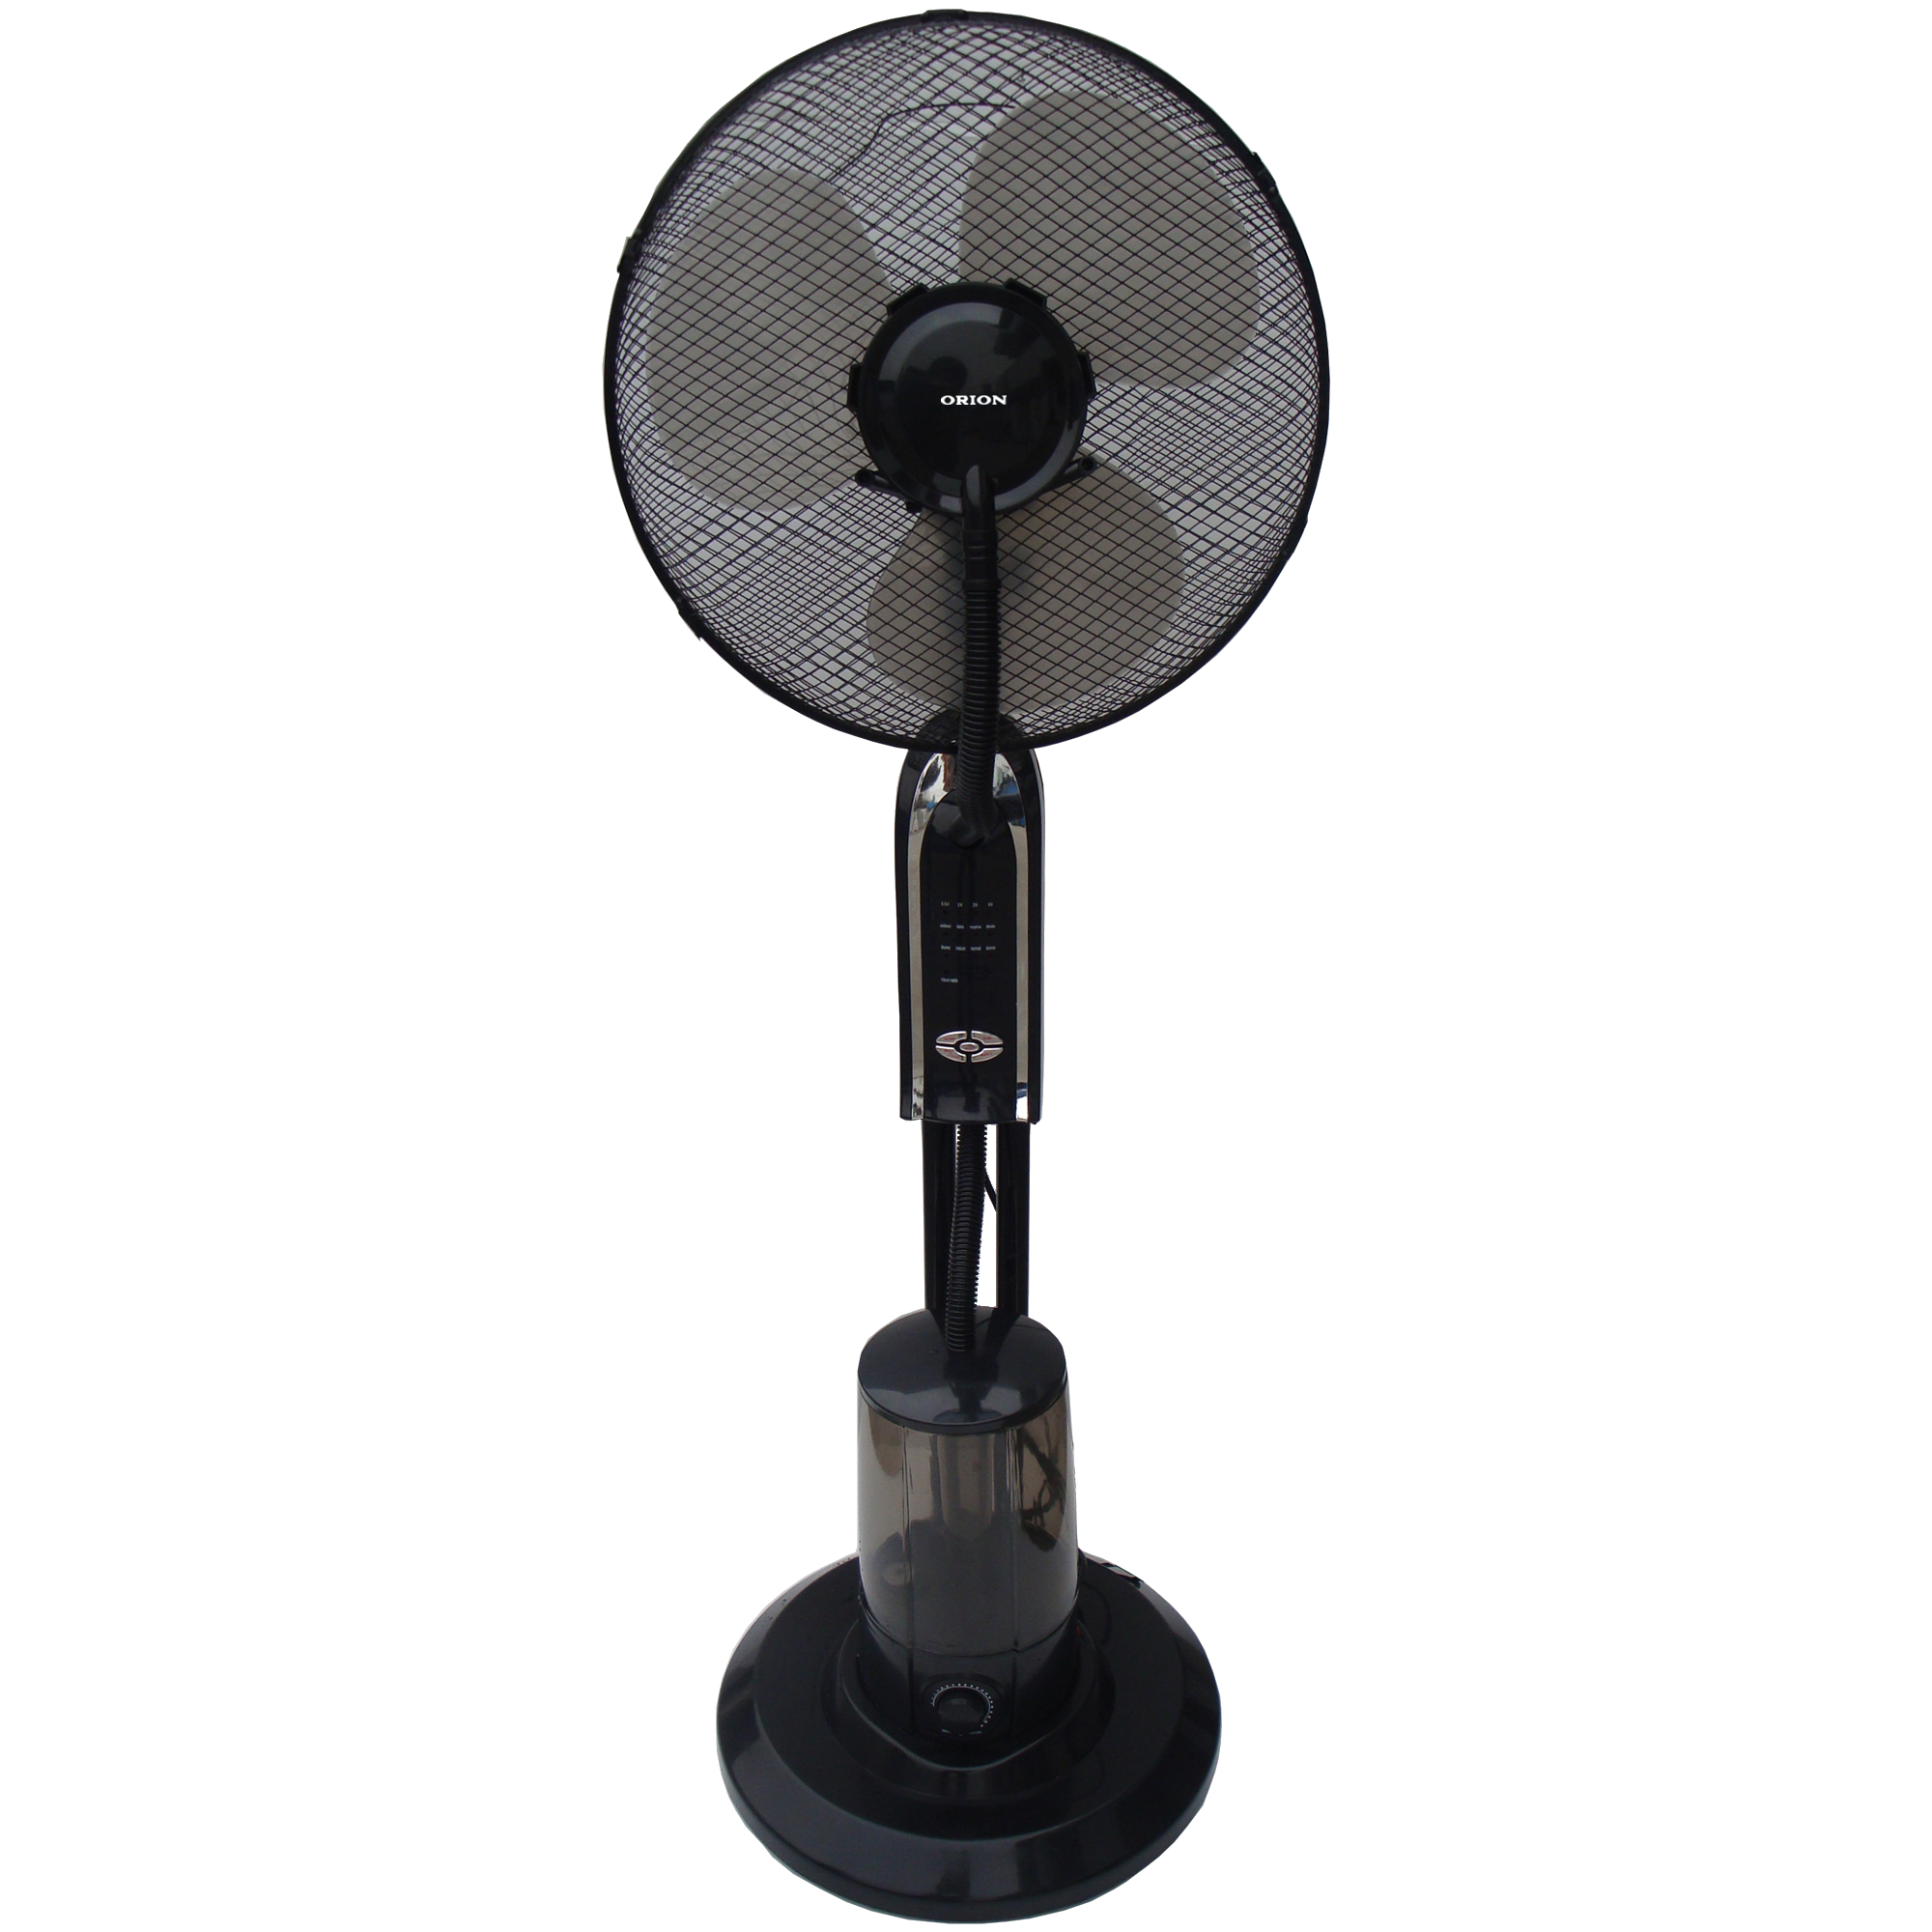 Напольный вентилятор воздуха купить. Напольный вентилятор Vitta GX-31g. Вентилятор с увлажнителем воздуха Mist-Fan om fs02. Вентилятор с увлажнителем Mist-Fan om FS 01. Напольный вентилятор AOX Mist Fan MF 26st.